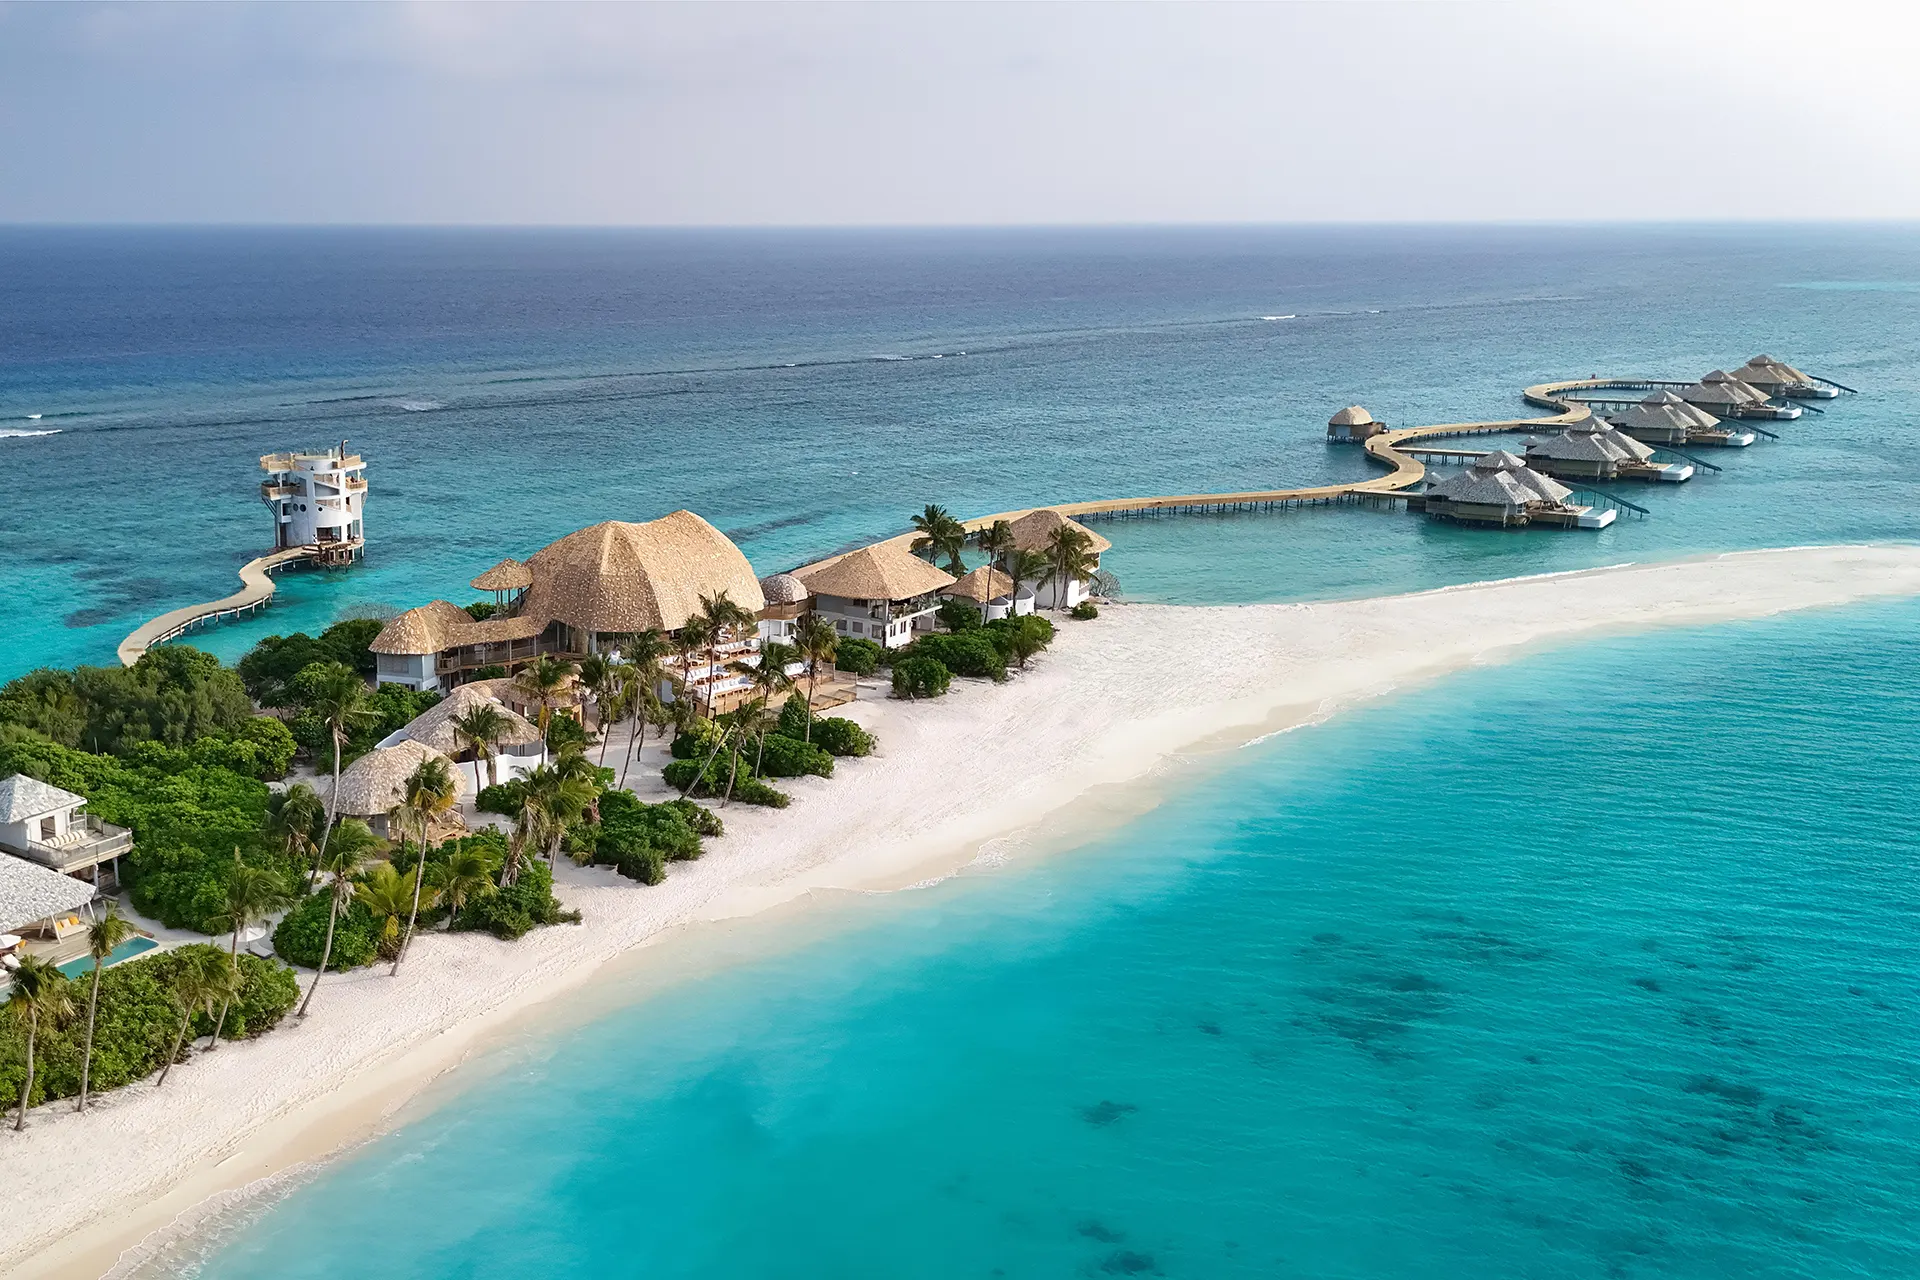 Maledivische Insel mit Wasservillen